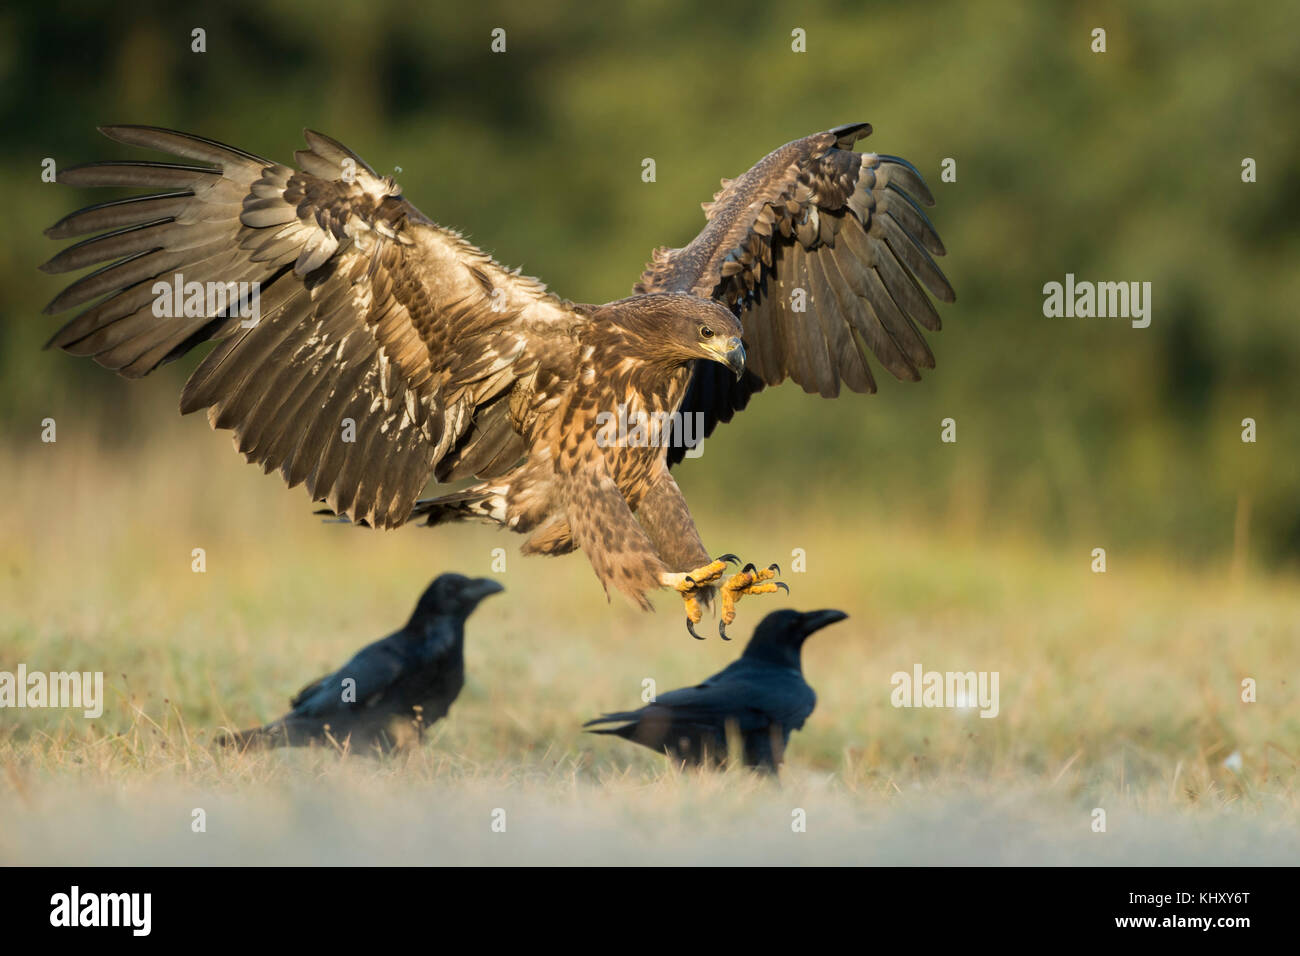 Aquila dalla coda bianca / Aquila marina / Seeadler ( Halaeetus albicilla ) giovani, atterrando su un prato accanto ad alcuni corvi, ali aperte, luce della mattina presto, Foto Stock